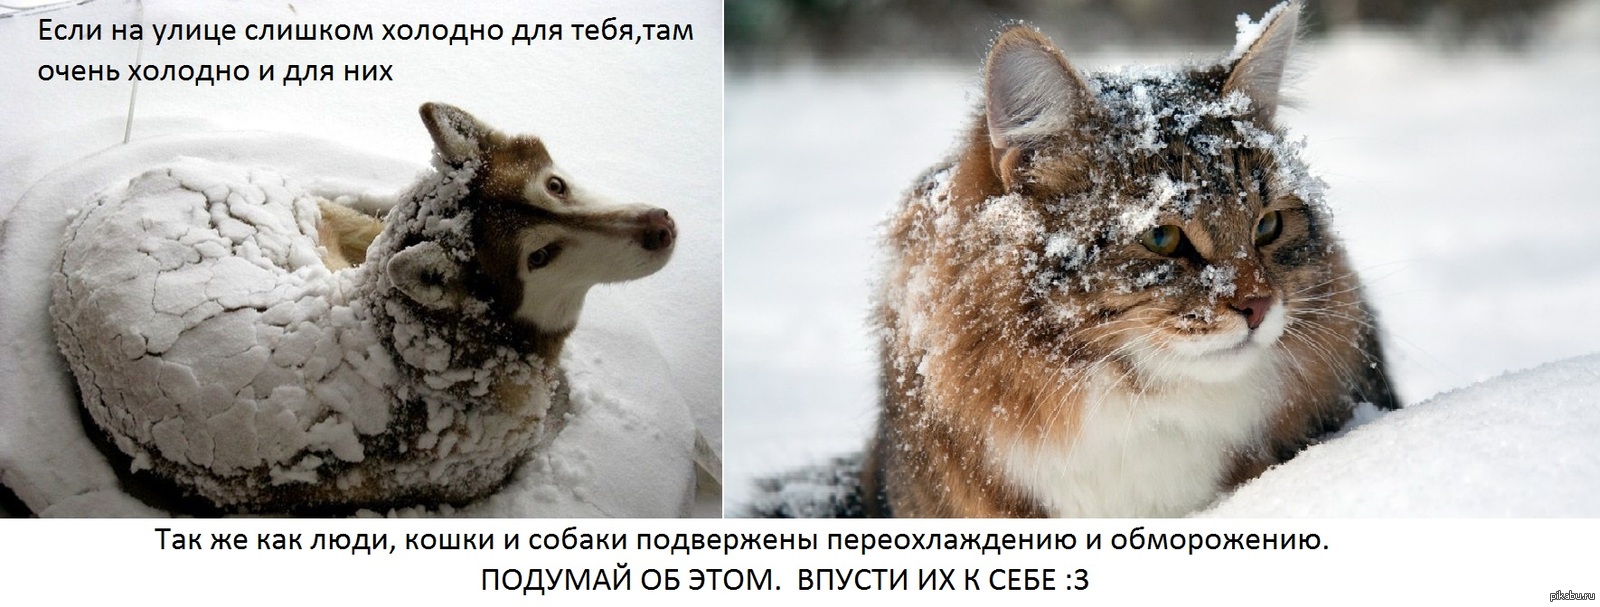 Холодный голод. Бездомные животные зима. Замерзающие бездомные животные. Помогайте бездомным животным в Морозы. Бездомные животные мерзнут.